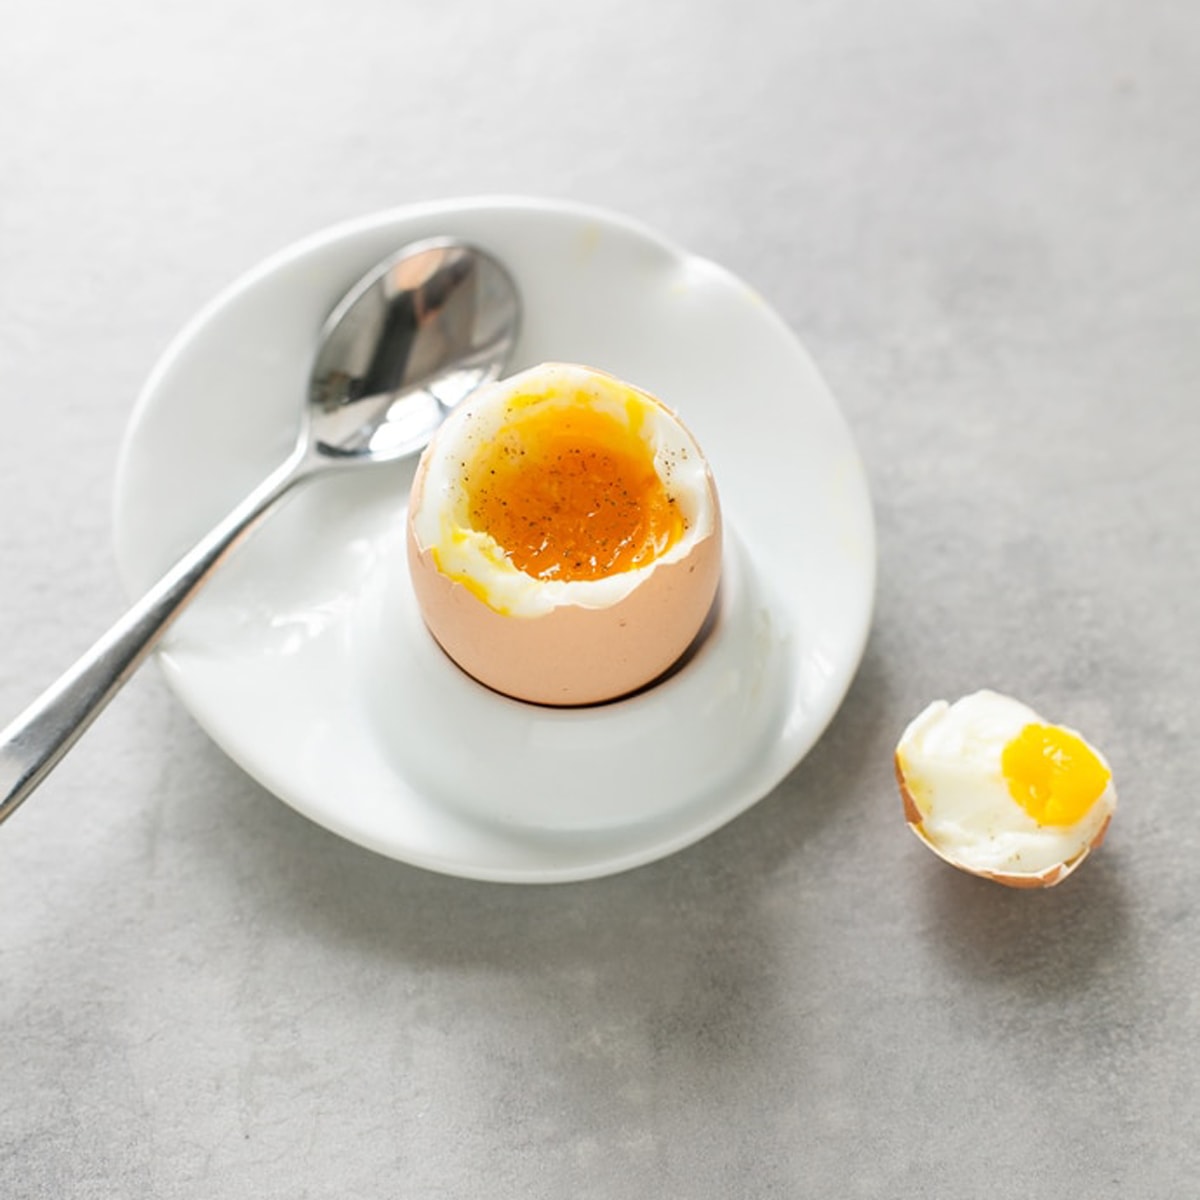 Ngâm trứng đã luộc với nước lạnh giúp bóc vỏ dễ dàng